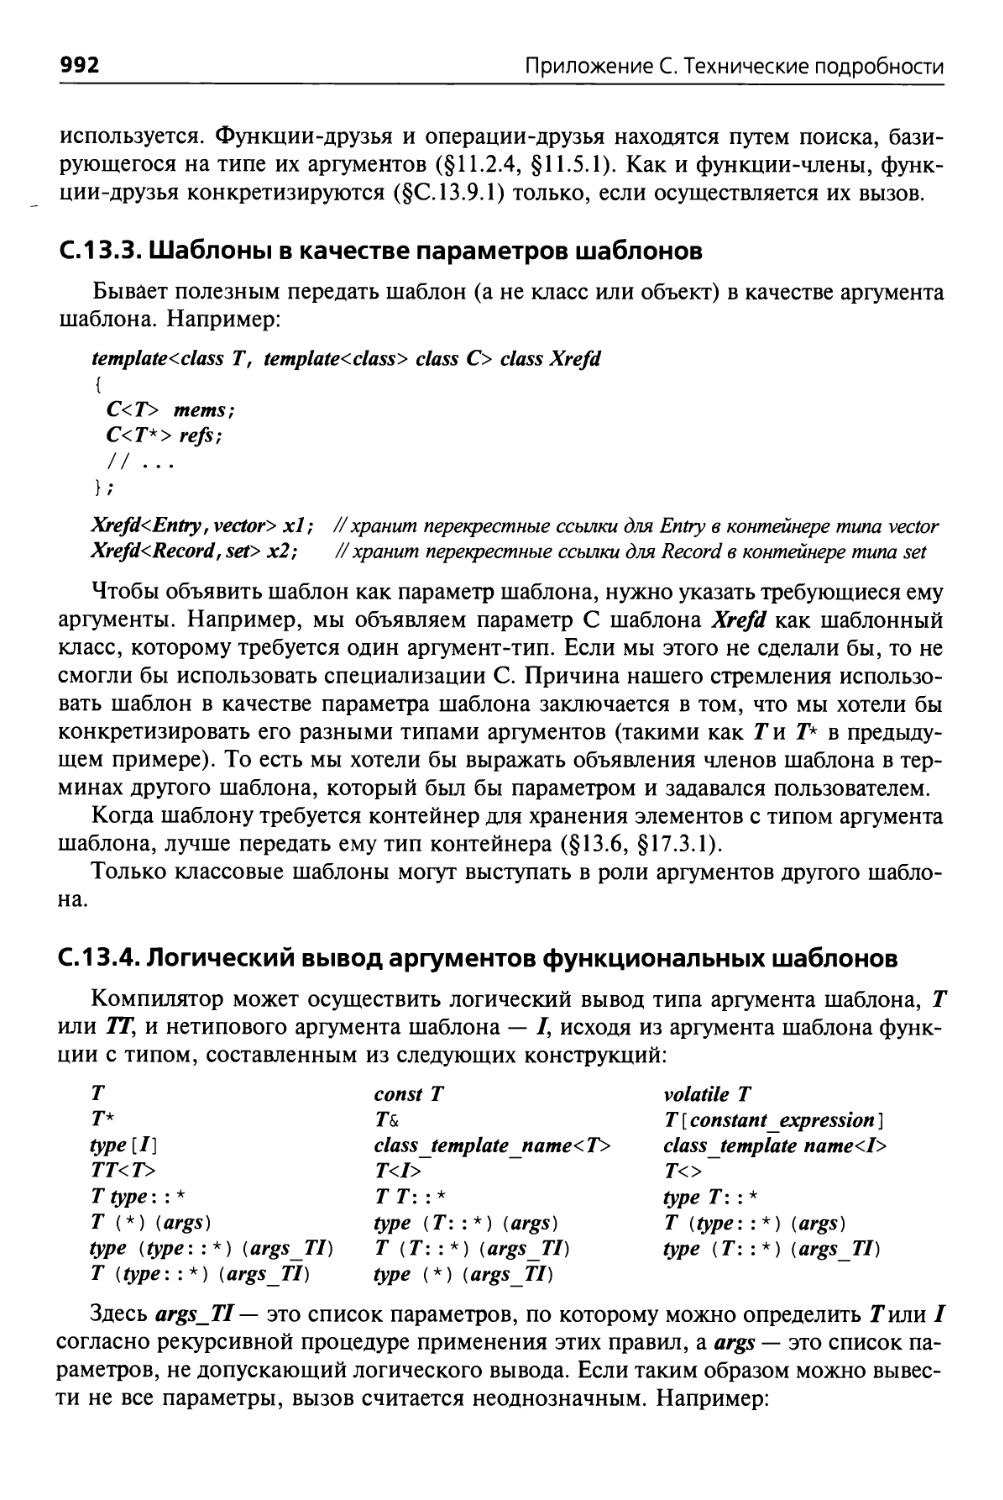 С. 13.3. Шаблоны в качестве параметров шаблонов
С. 13.4. Логический вывод аргументов функциональных шаблонов